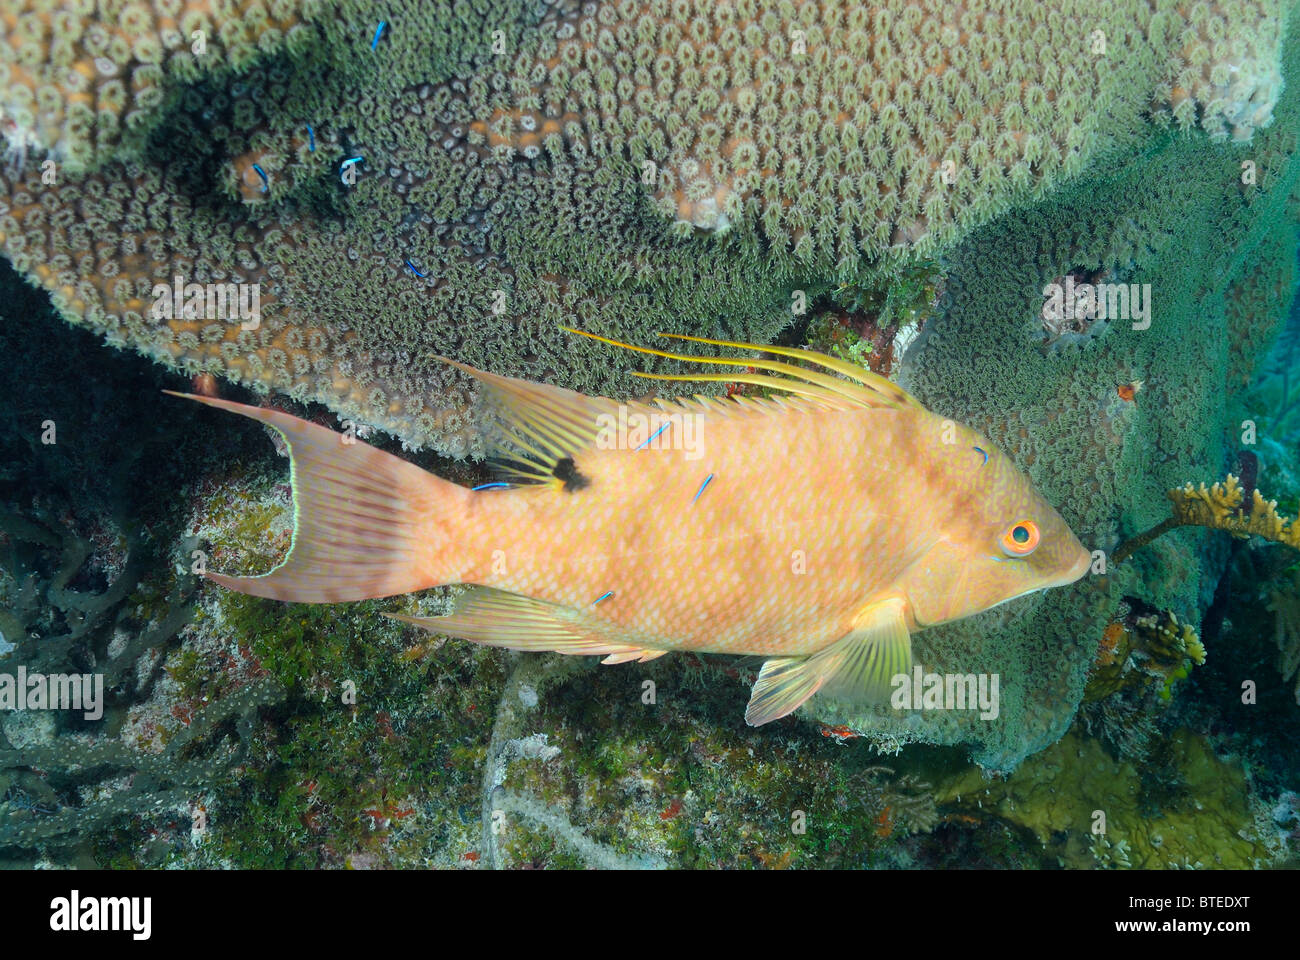 Juvenile hogfish off Key Largo coast, Florida, USA Stock Photo